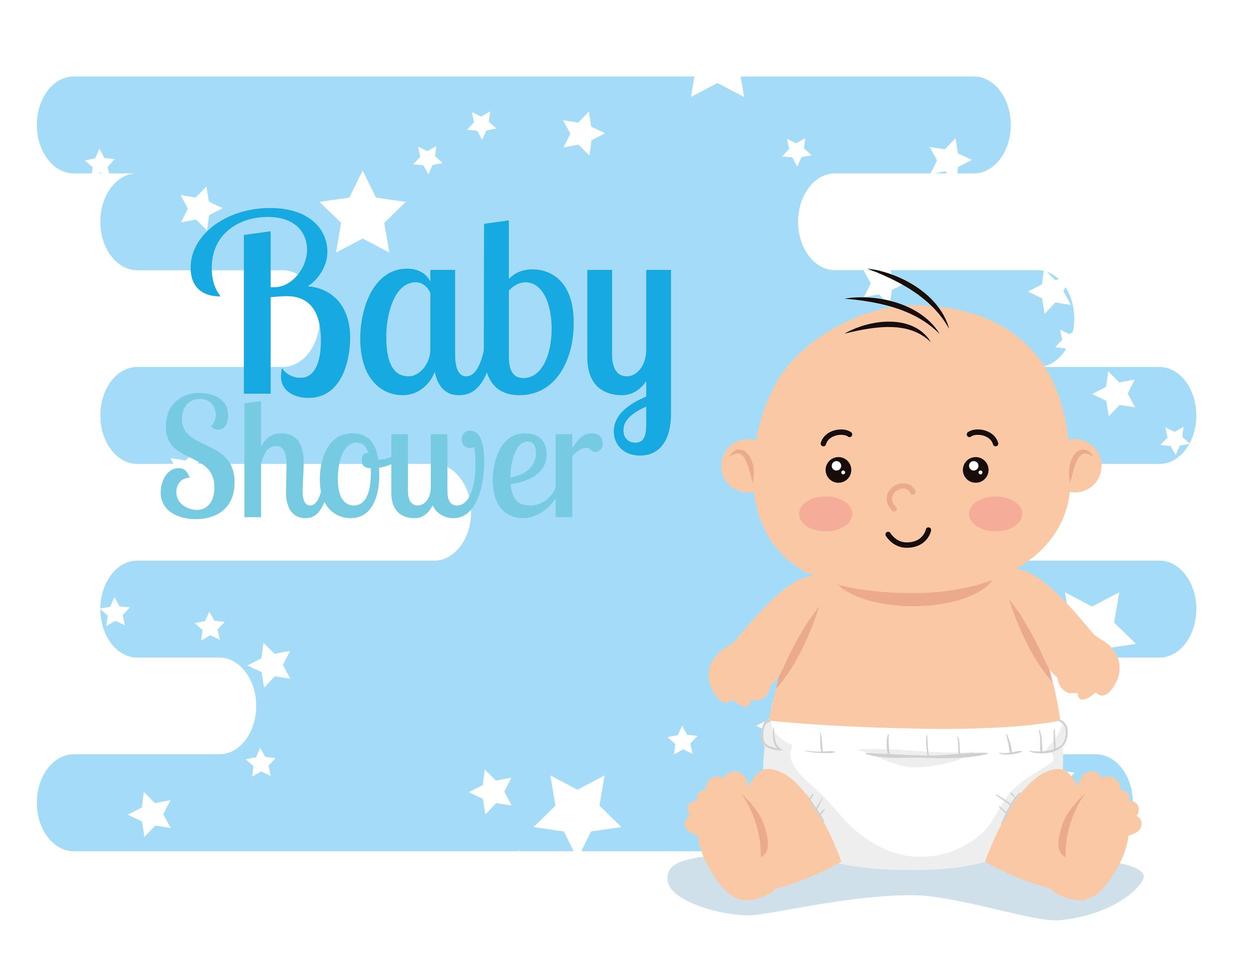 carte de douche de bébé avec mignon petit garçon et décoration vecteur